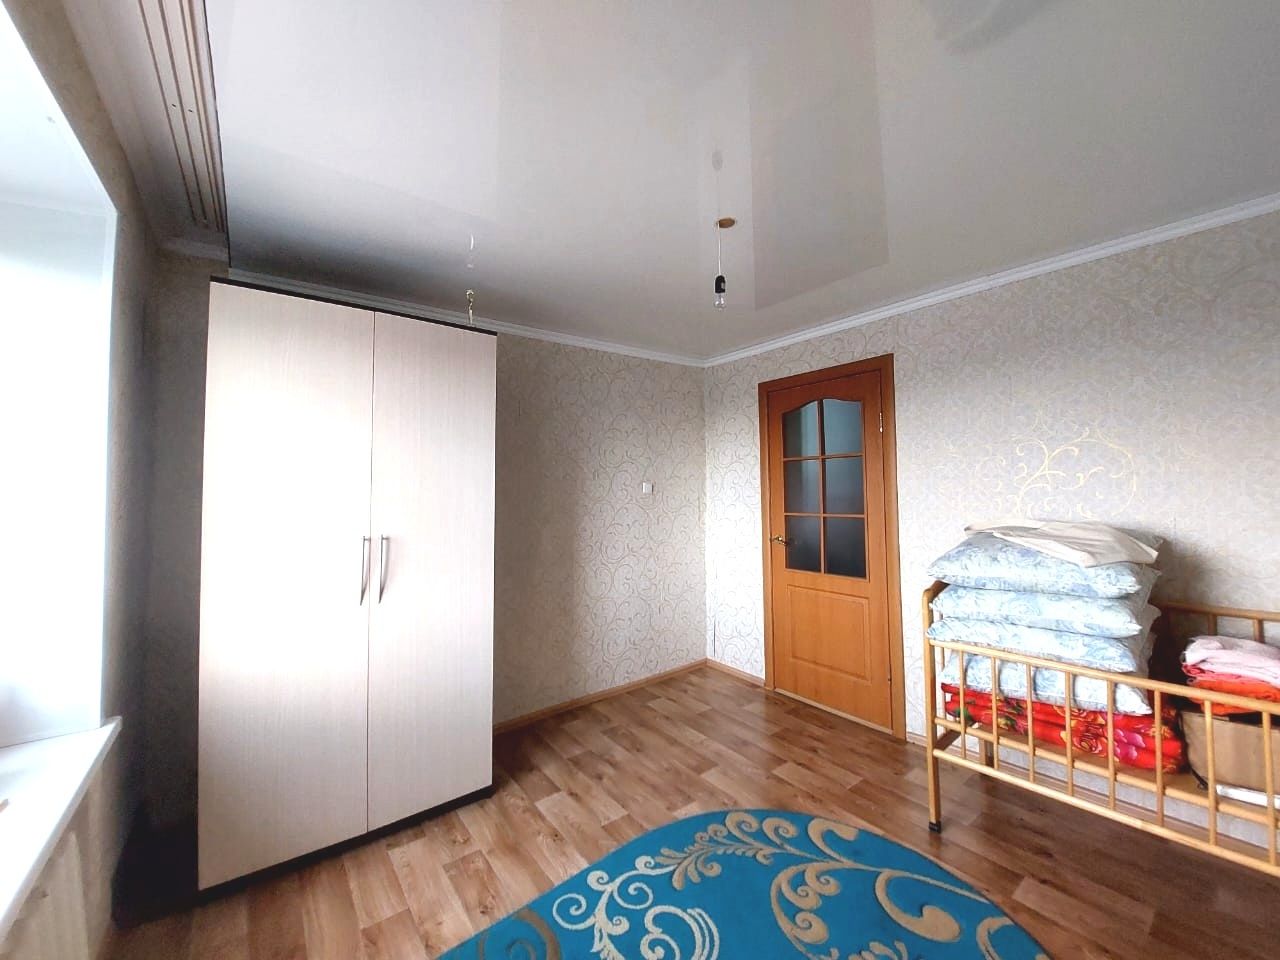 Продается 3х-комнатная квартира в районе Зигзаг